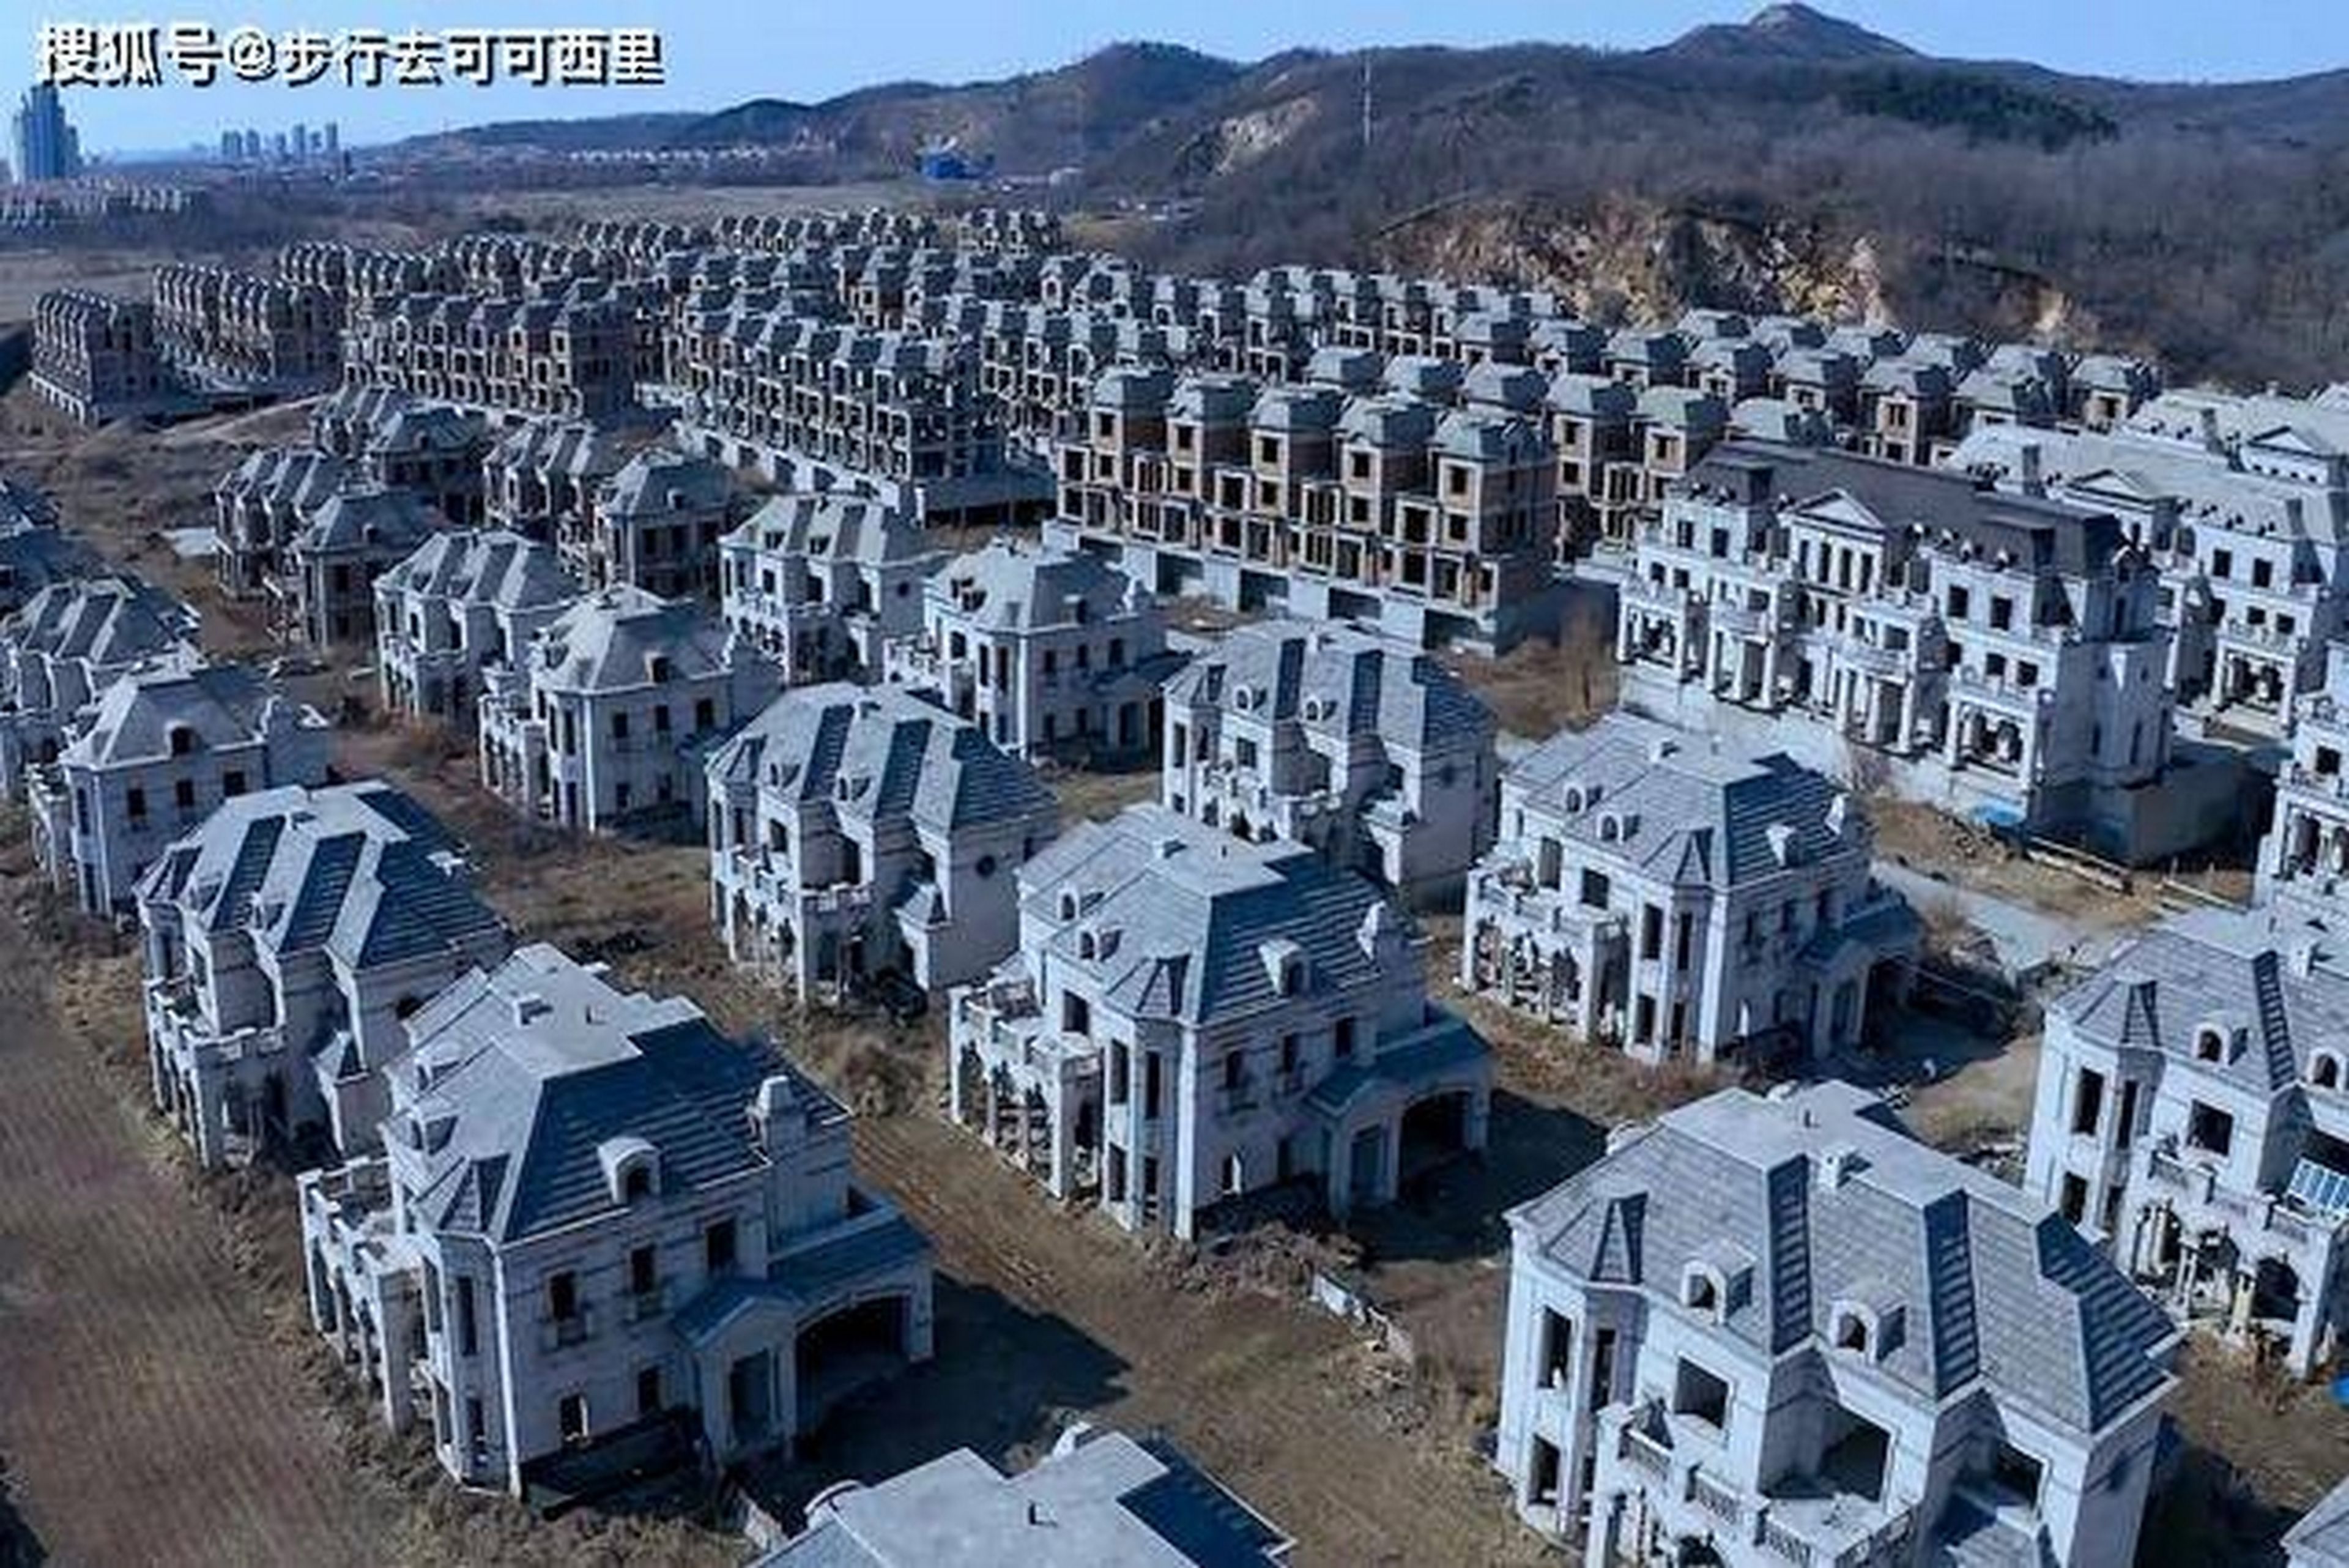 El misterio de las 250 mansiones de lujo abandonadas en una explanada en China